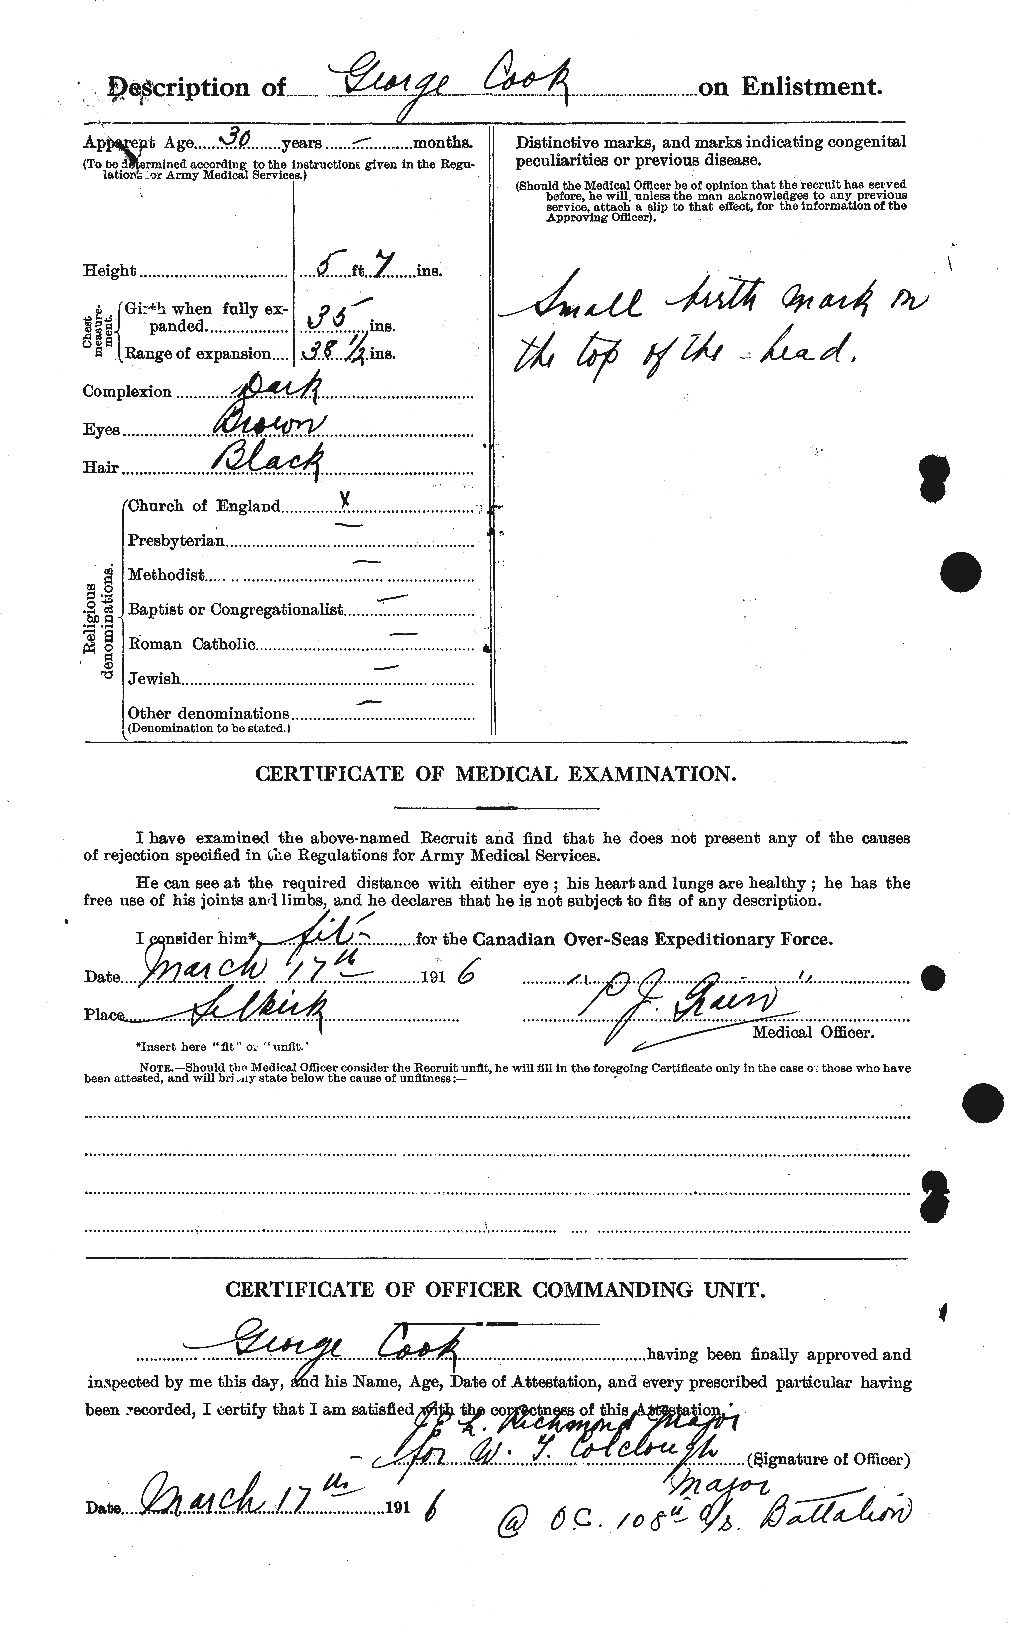 Dossiers du Personnel de la Première Guerre mondiale - CEC 073837b